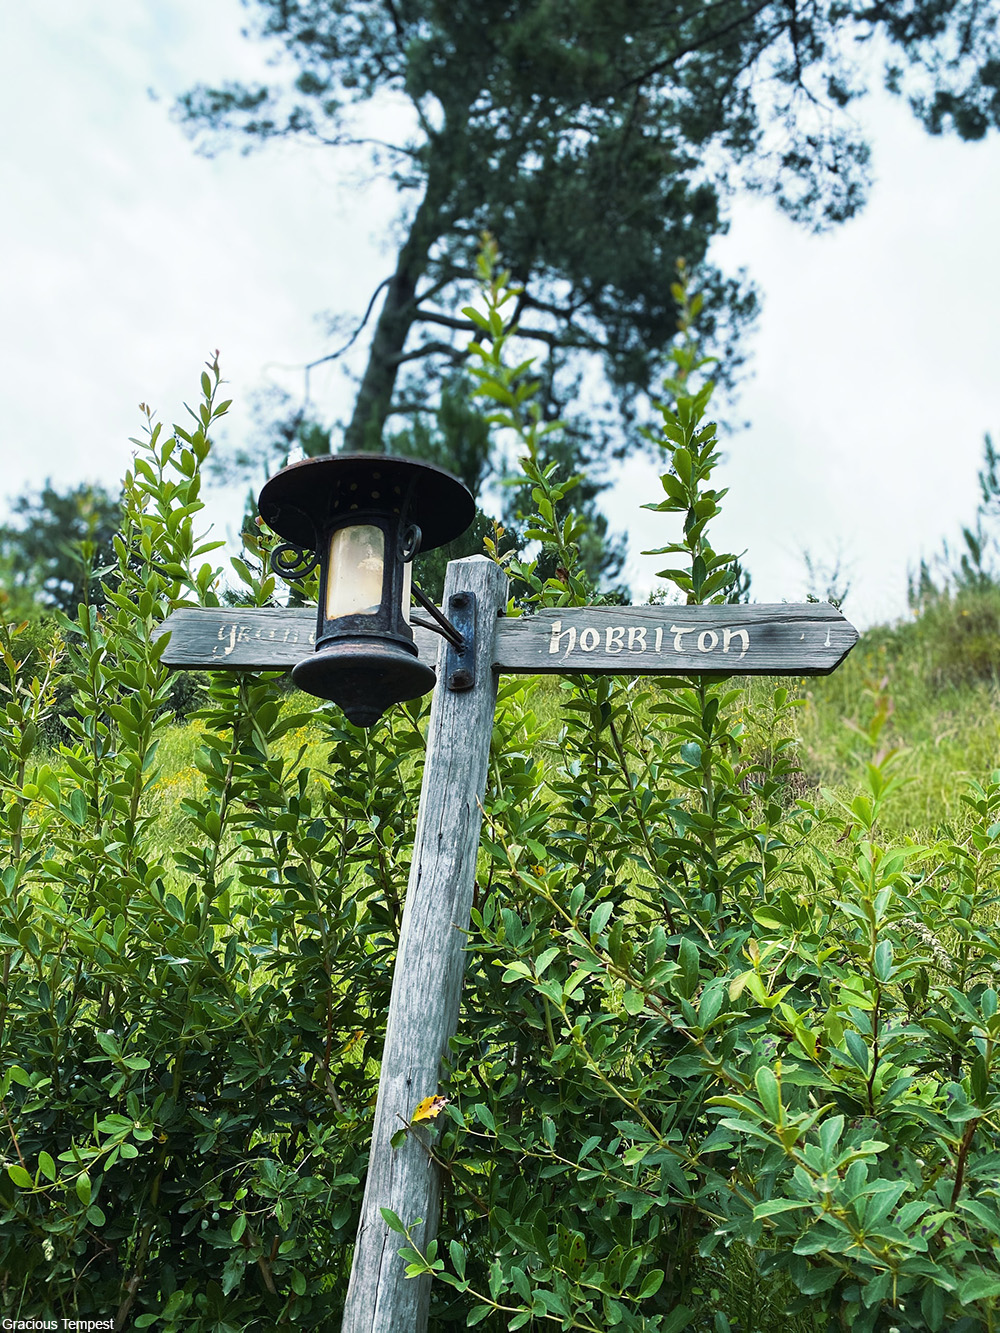 lamp post in Hobbiton